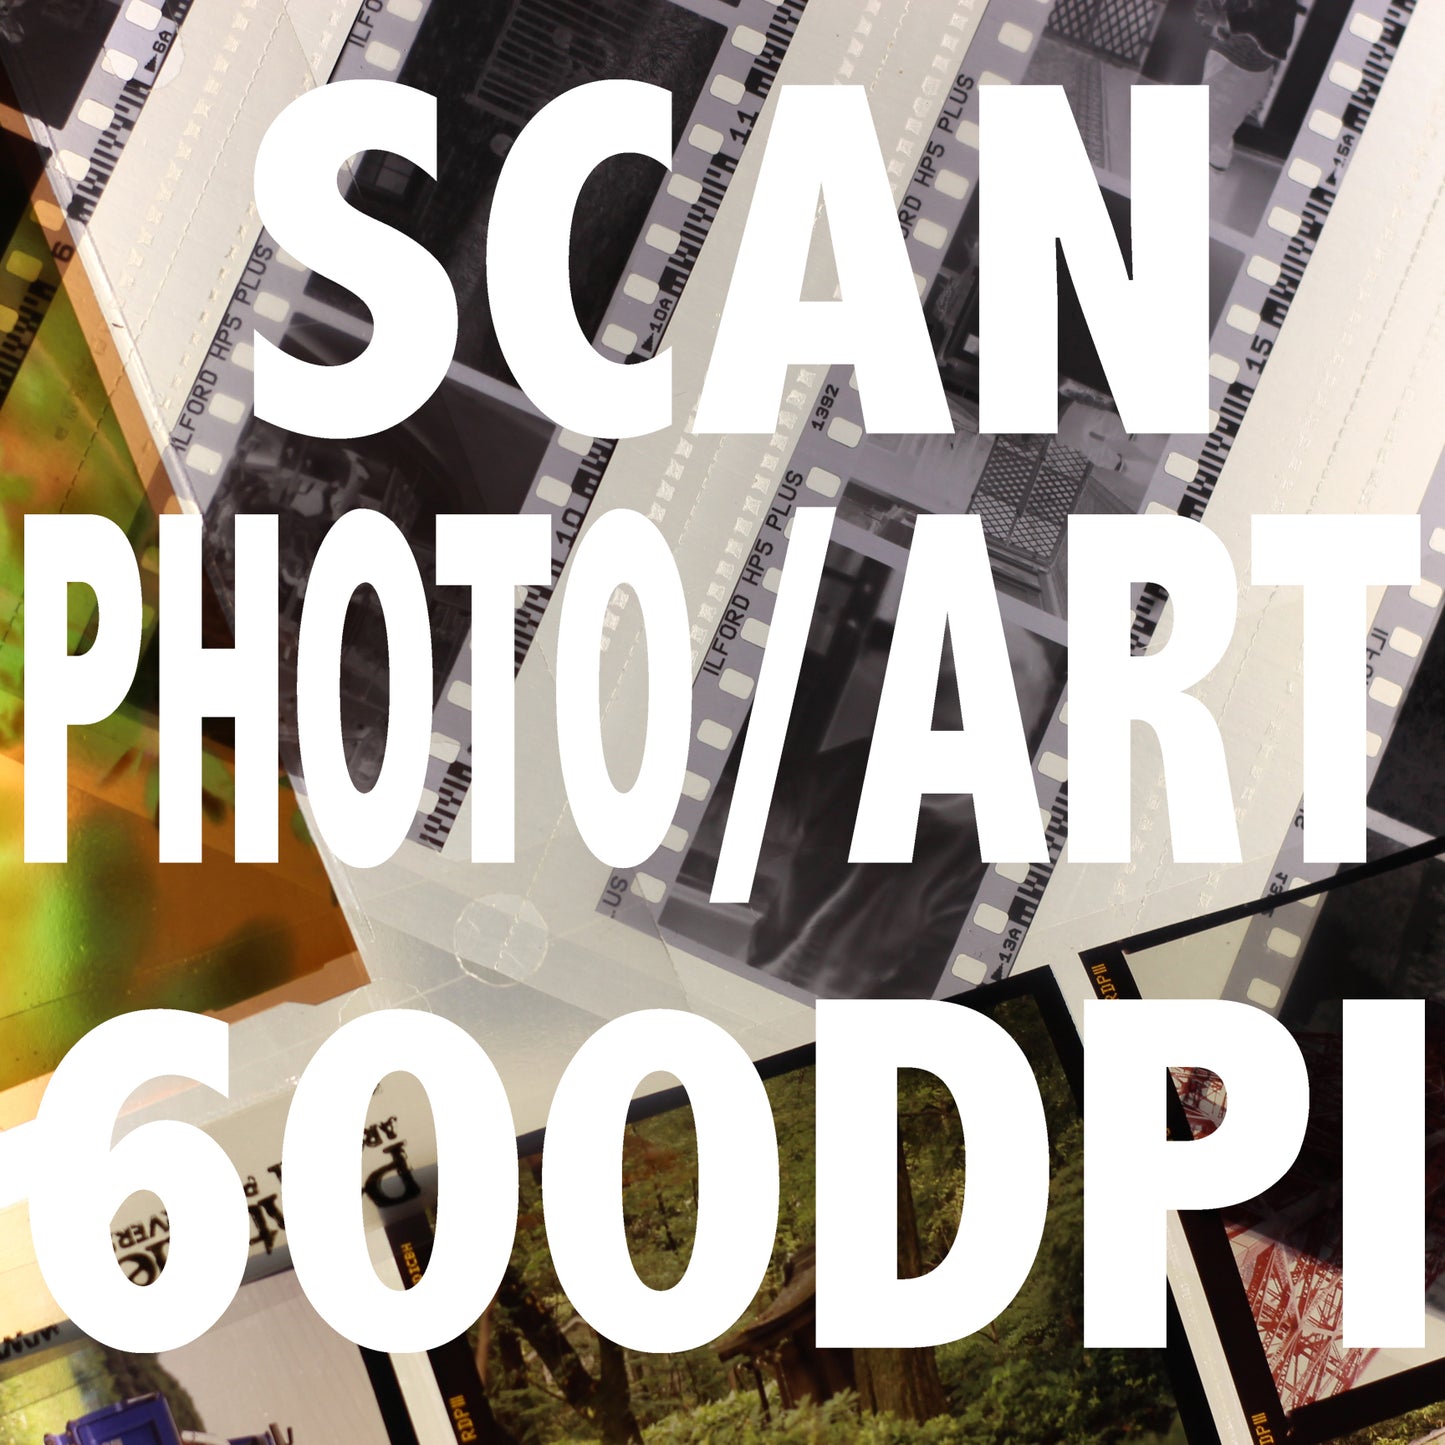 Prints and Artworks Scanning per image 600DPI